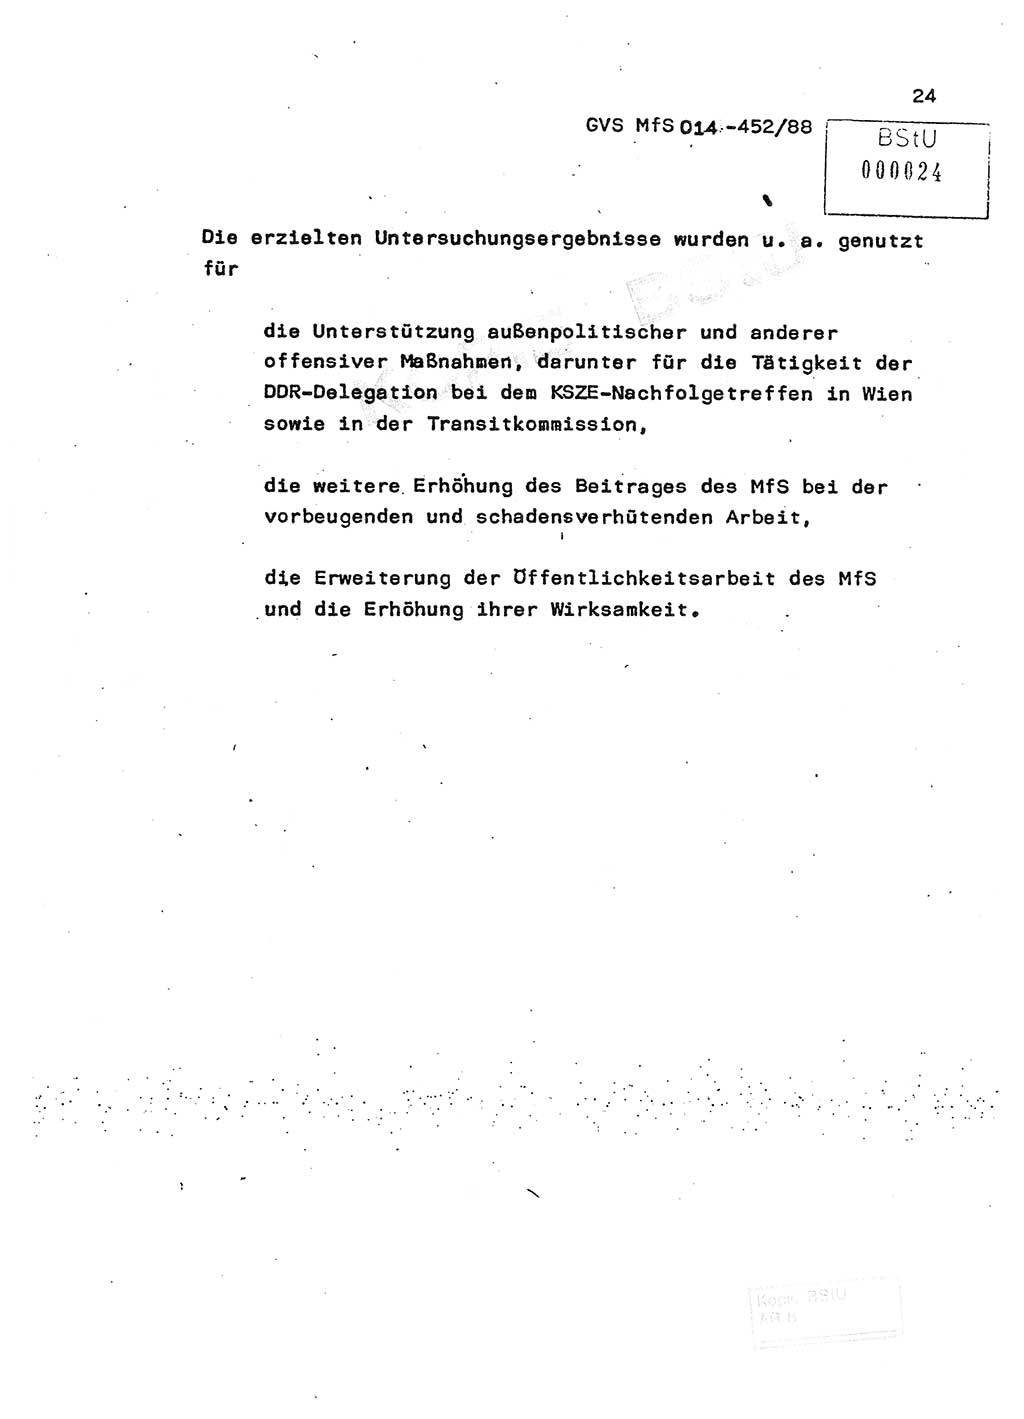 Jahresbericht der Hauptabteilung (HA) Ⅸ 1987, Einschätzung der Wirksamkeit der Untersuchungsarbeit im Jahre 1987, Ministerium für Staatssicherheit (MfS) der Deutschen Demokratischen Republik (DDR), Hauptabteilung Ⅸ, Geheime Verschlußsache (GVS) o014-452/88, Berlin 1988, Seite 24 (Einsch. MfS DDR HA Ⅸ GVS o014-452/88 1987, S. 24)